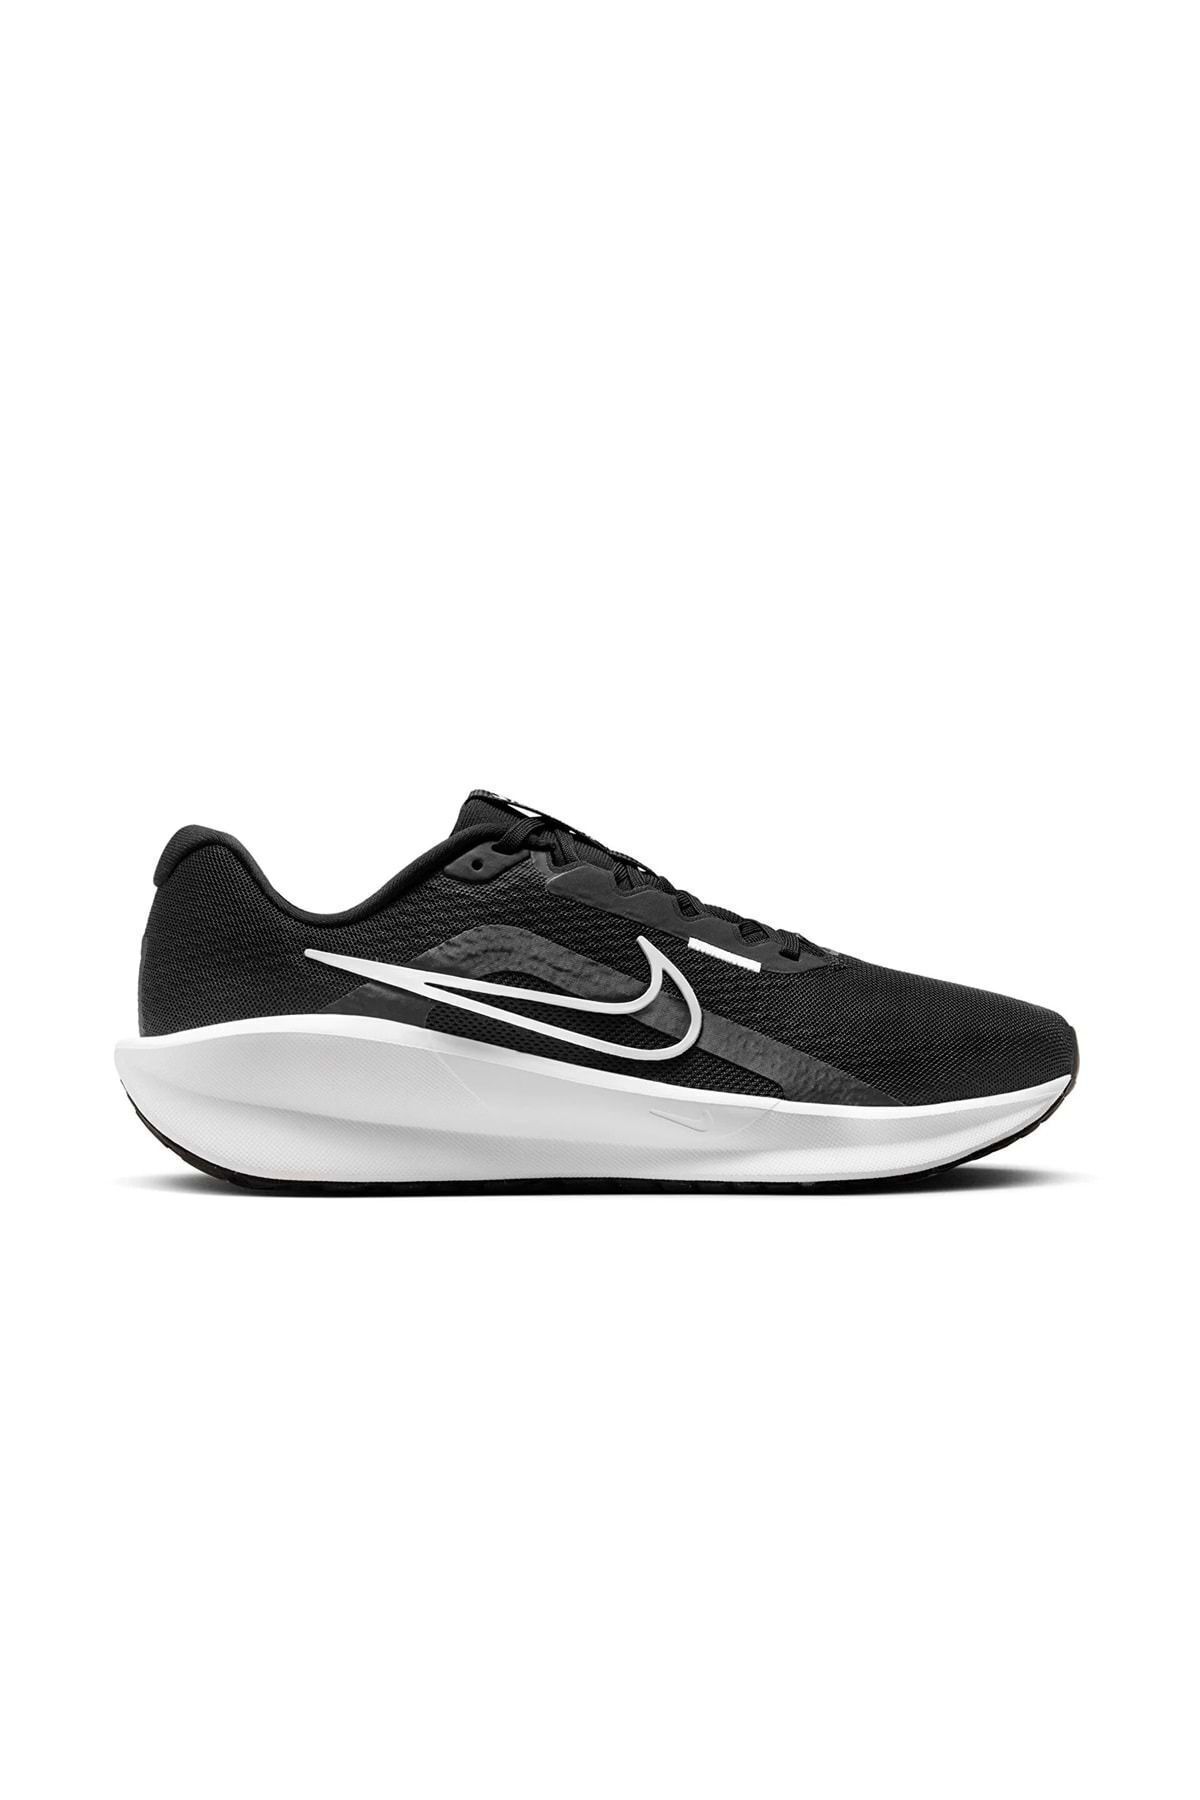 Nike Fd6454 001 Downshıfter 13 Erkek Spor Ayakkabı